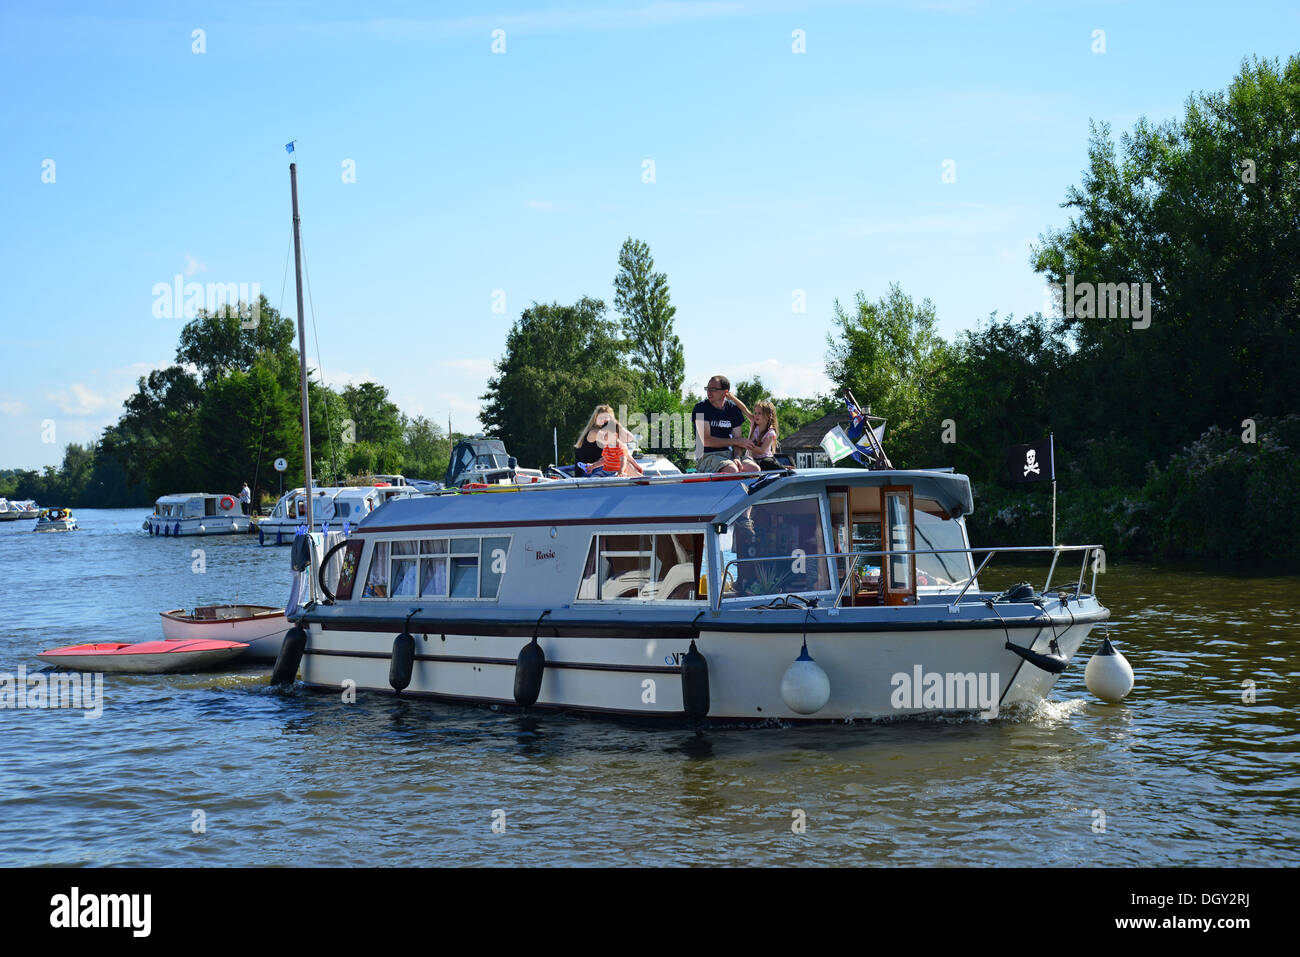 Bootsfahrten auf dem Fluss Bure, Horning, Norfolk Broads, Norfolk, England, Vereinigtes Königreich Stockfoto